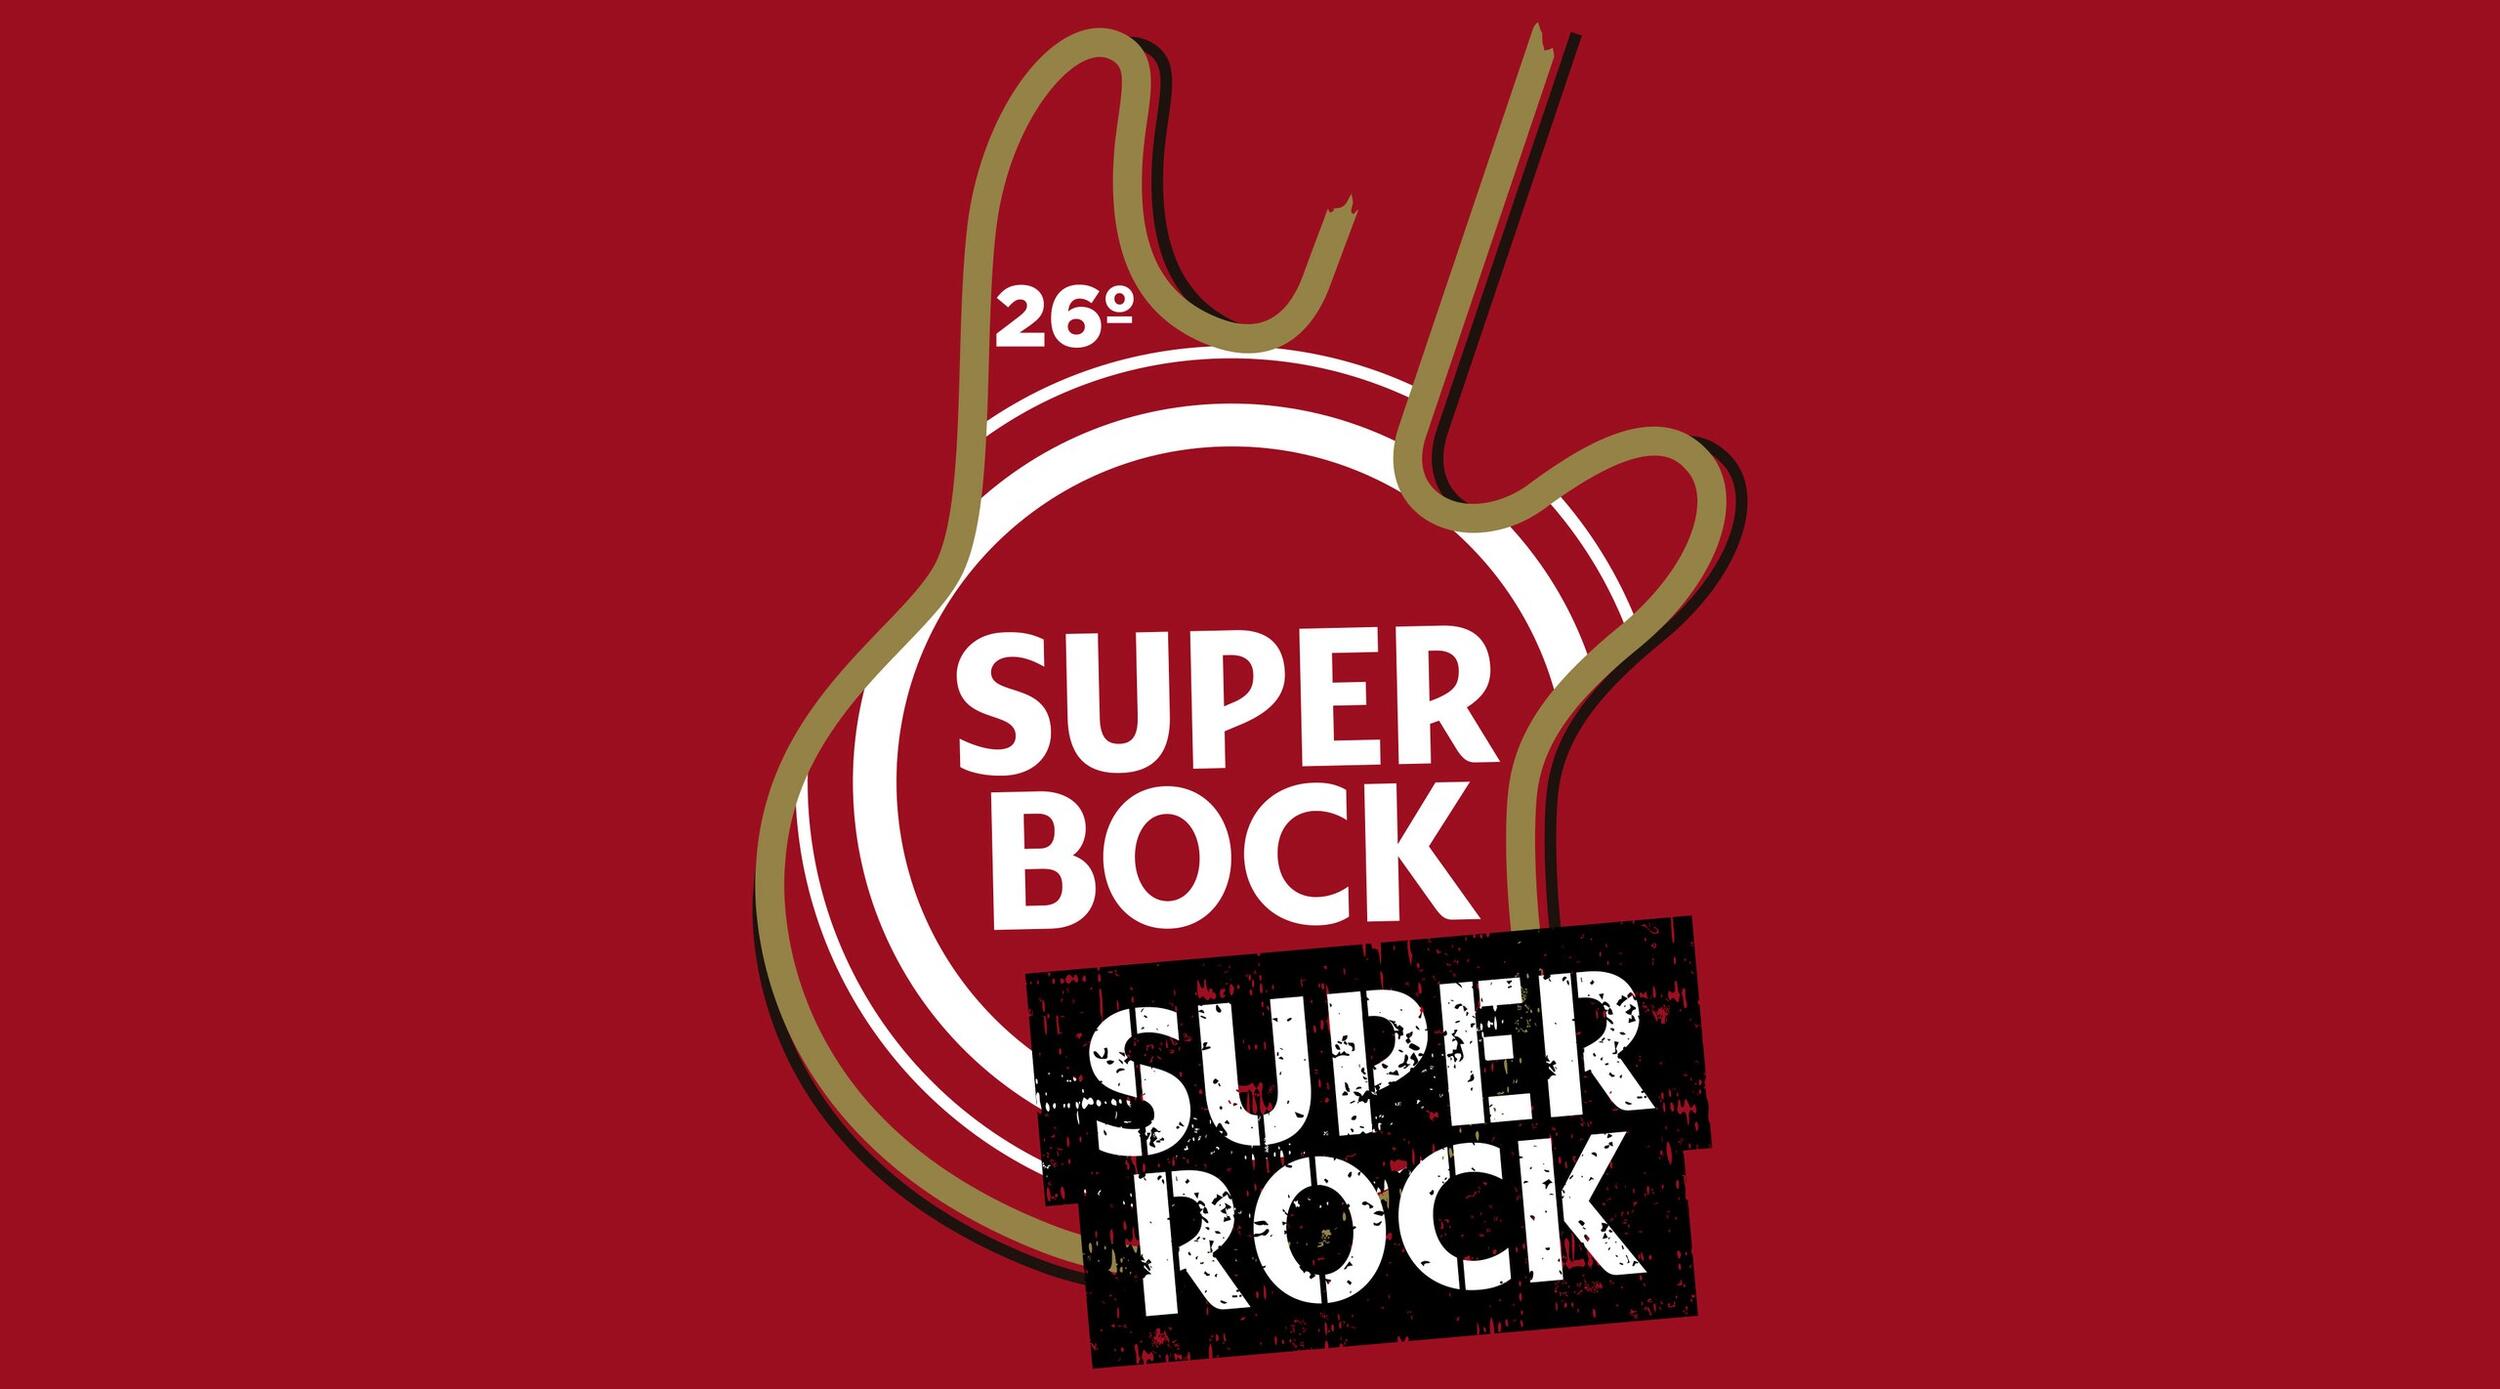 Super bock super rock 1 2500 2500